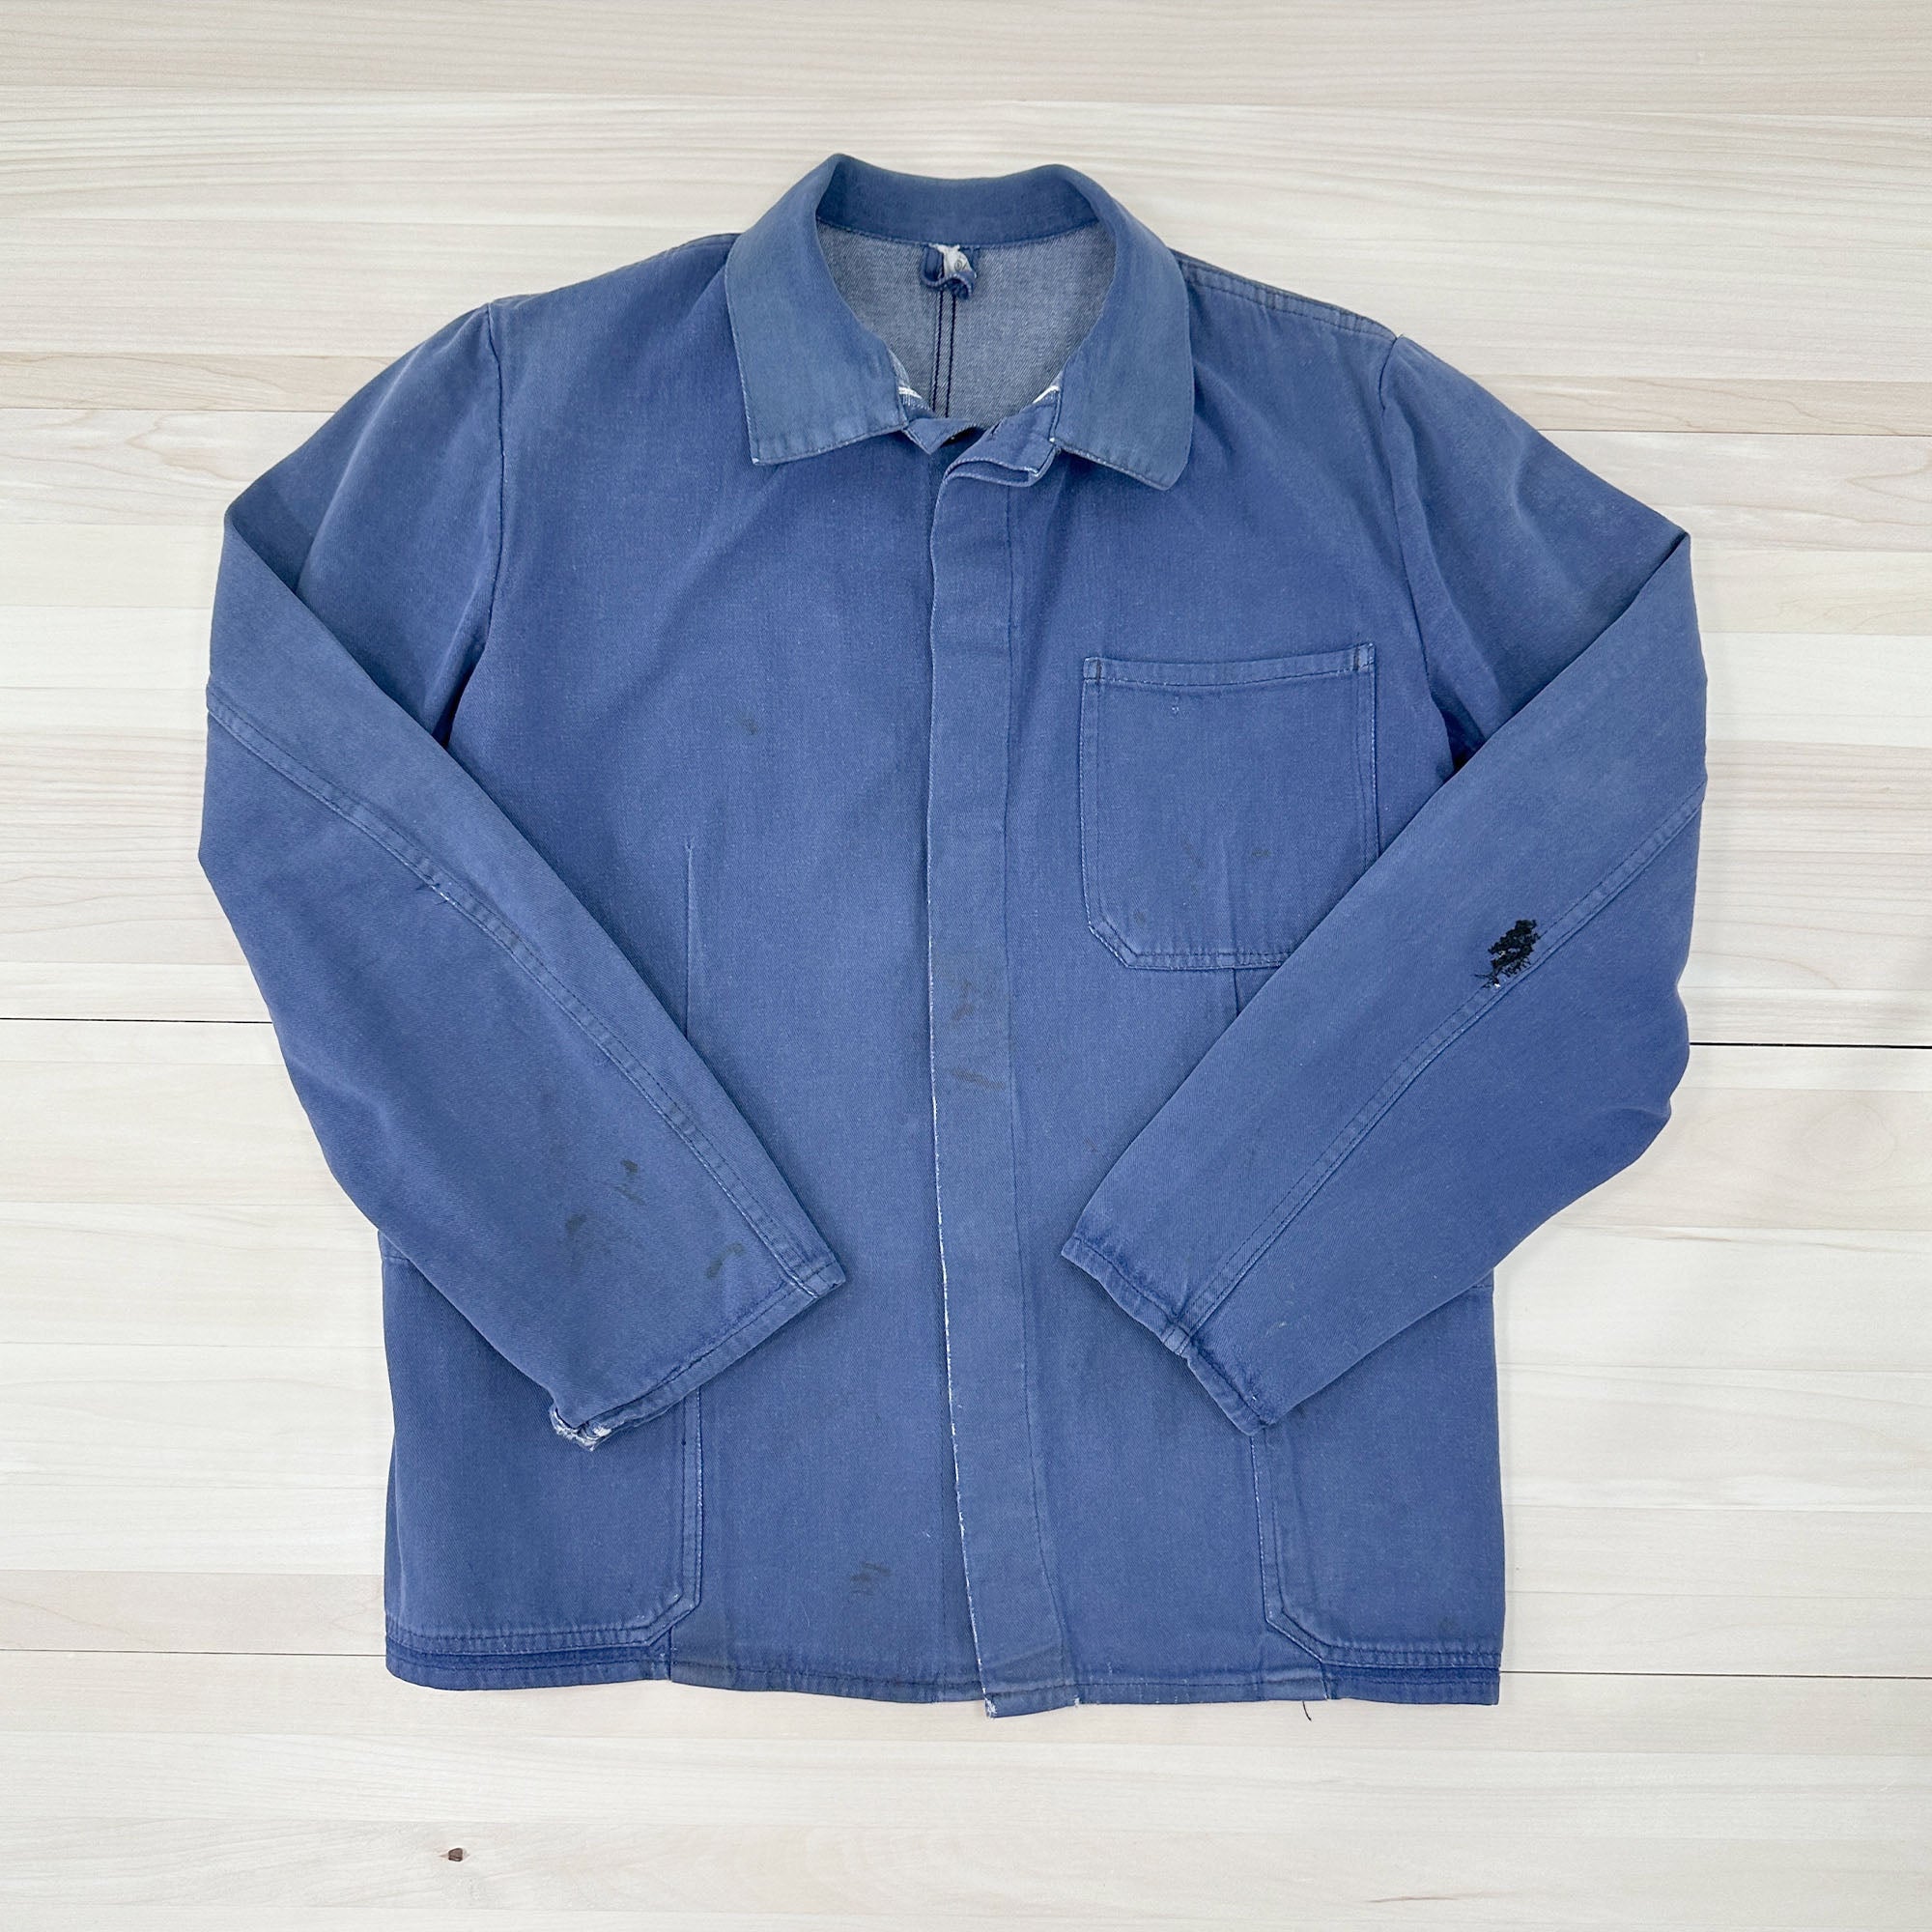 Distressed Vintage Krähe Blue Work Jacket - Women's Medium-5